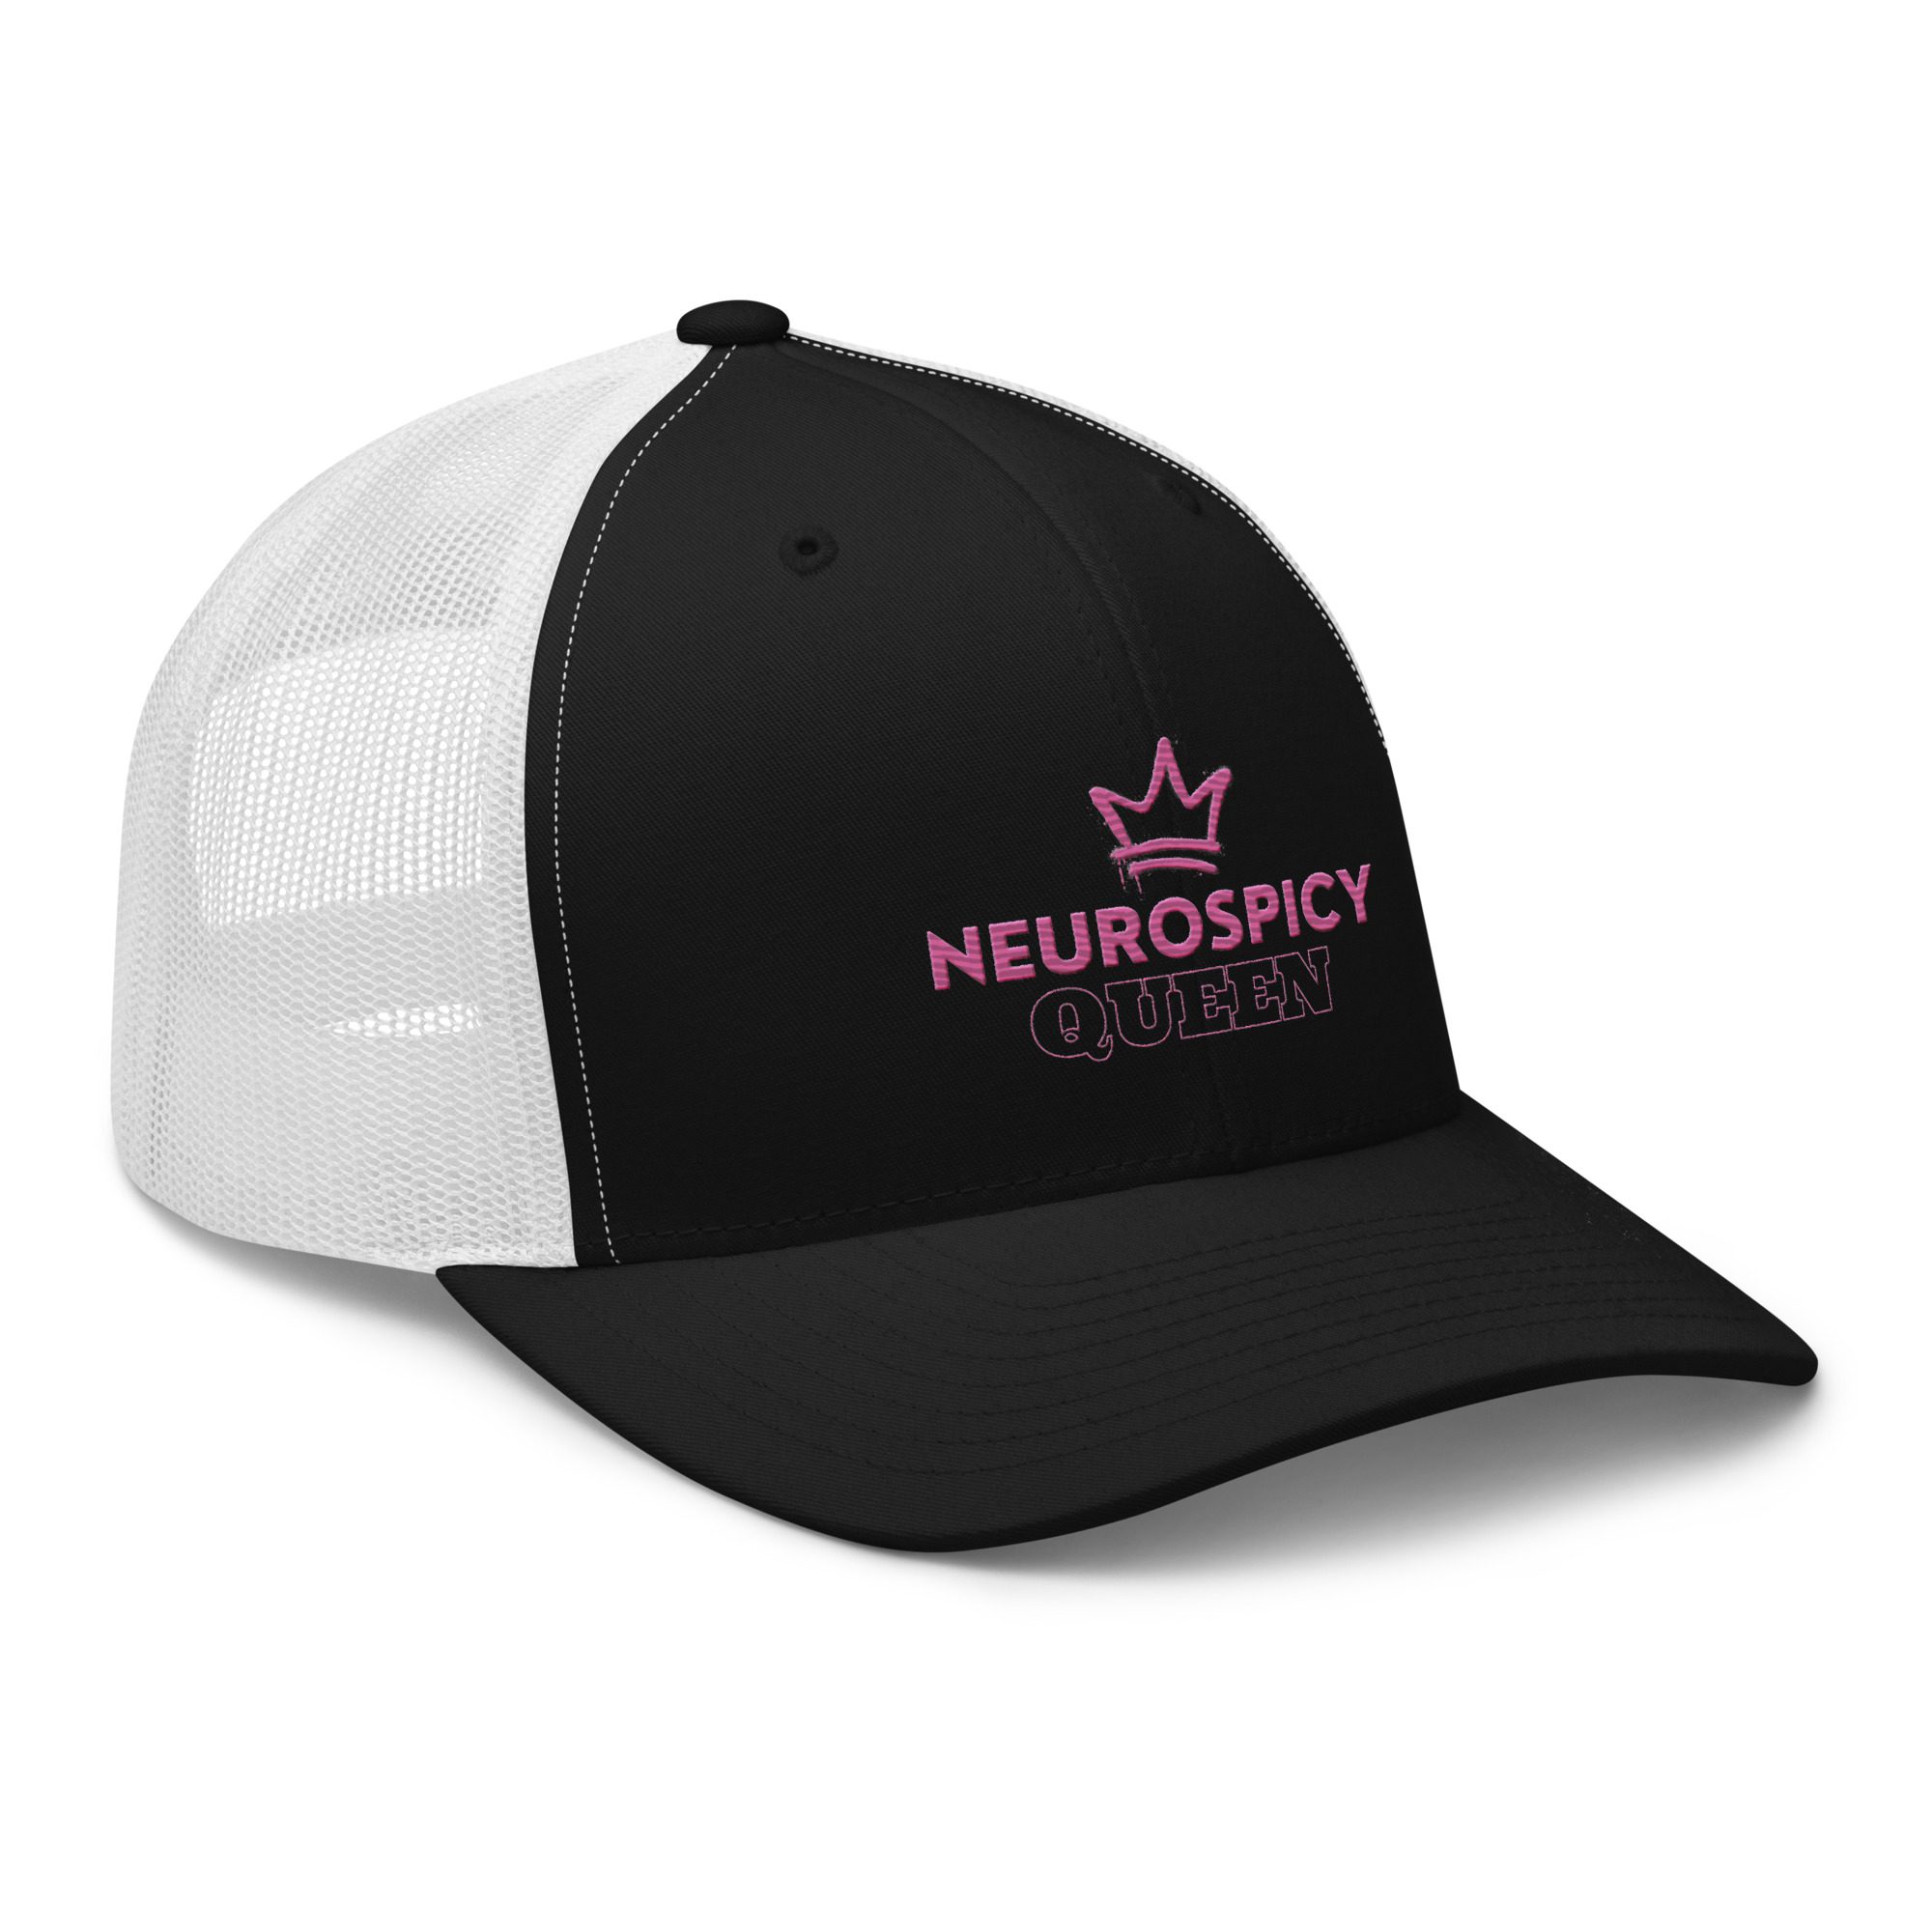 Neurospicy Queen Trucker Cap